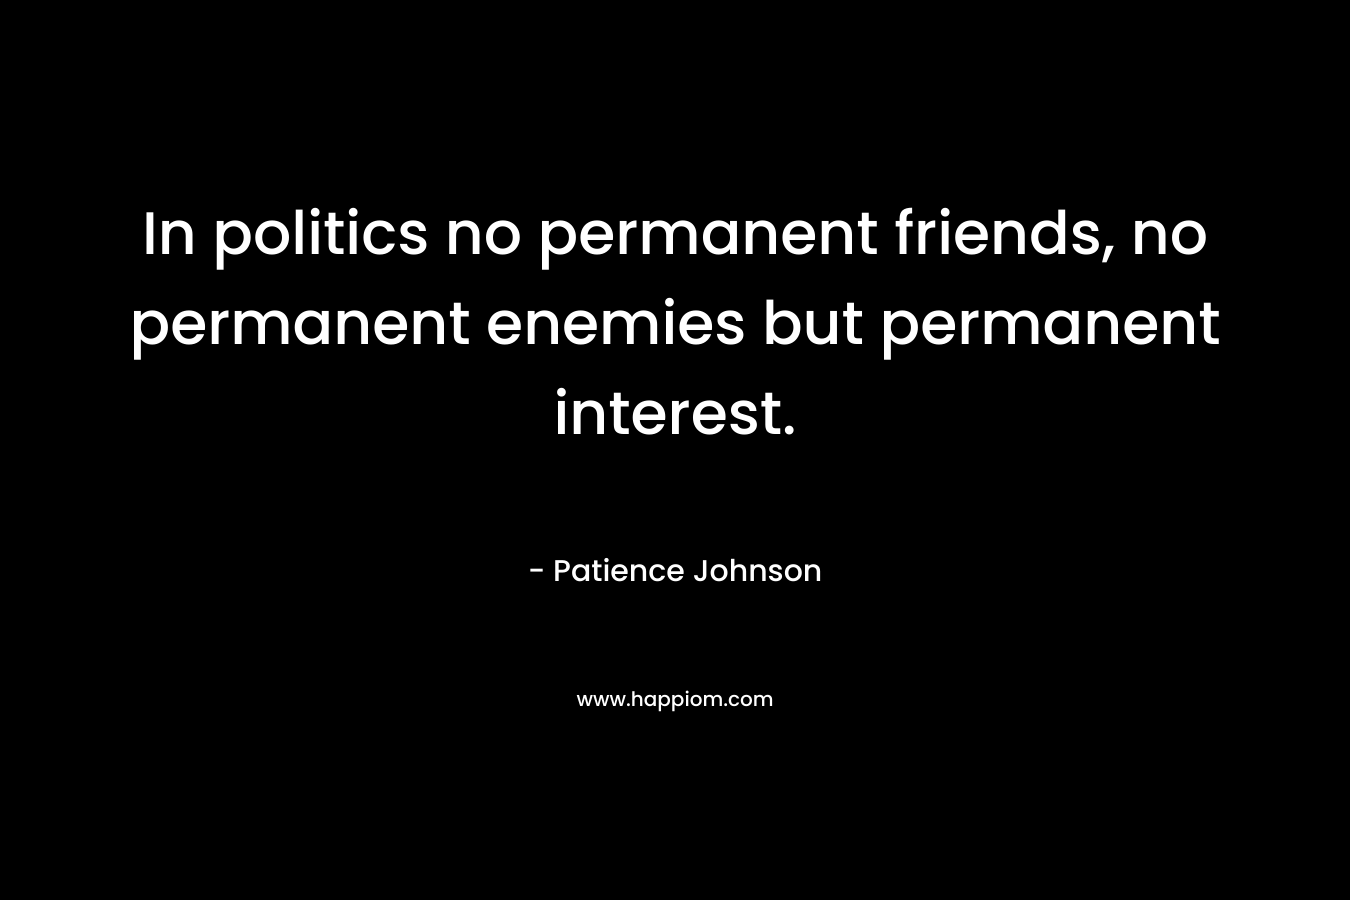 In politics no permanent friends, no permanent enemies but permanent interest.